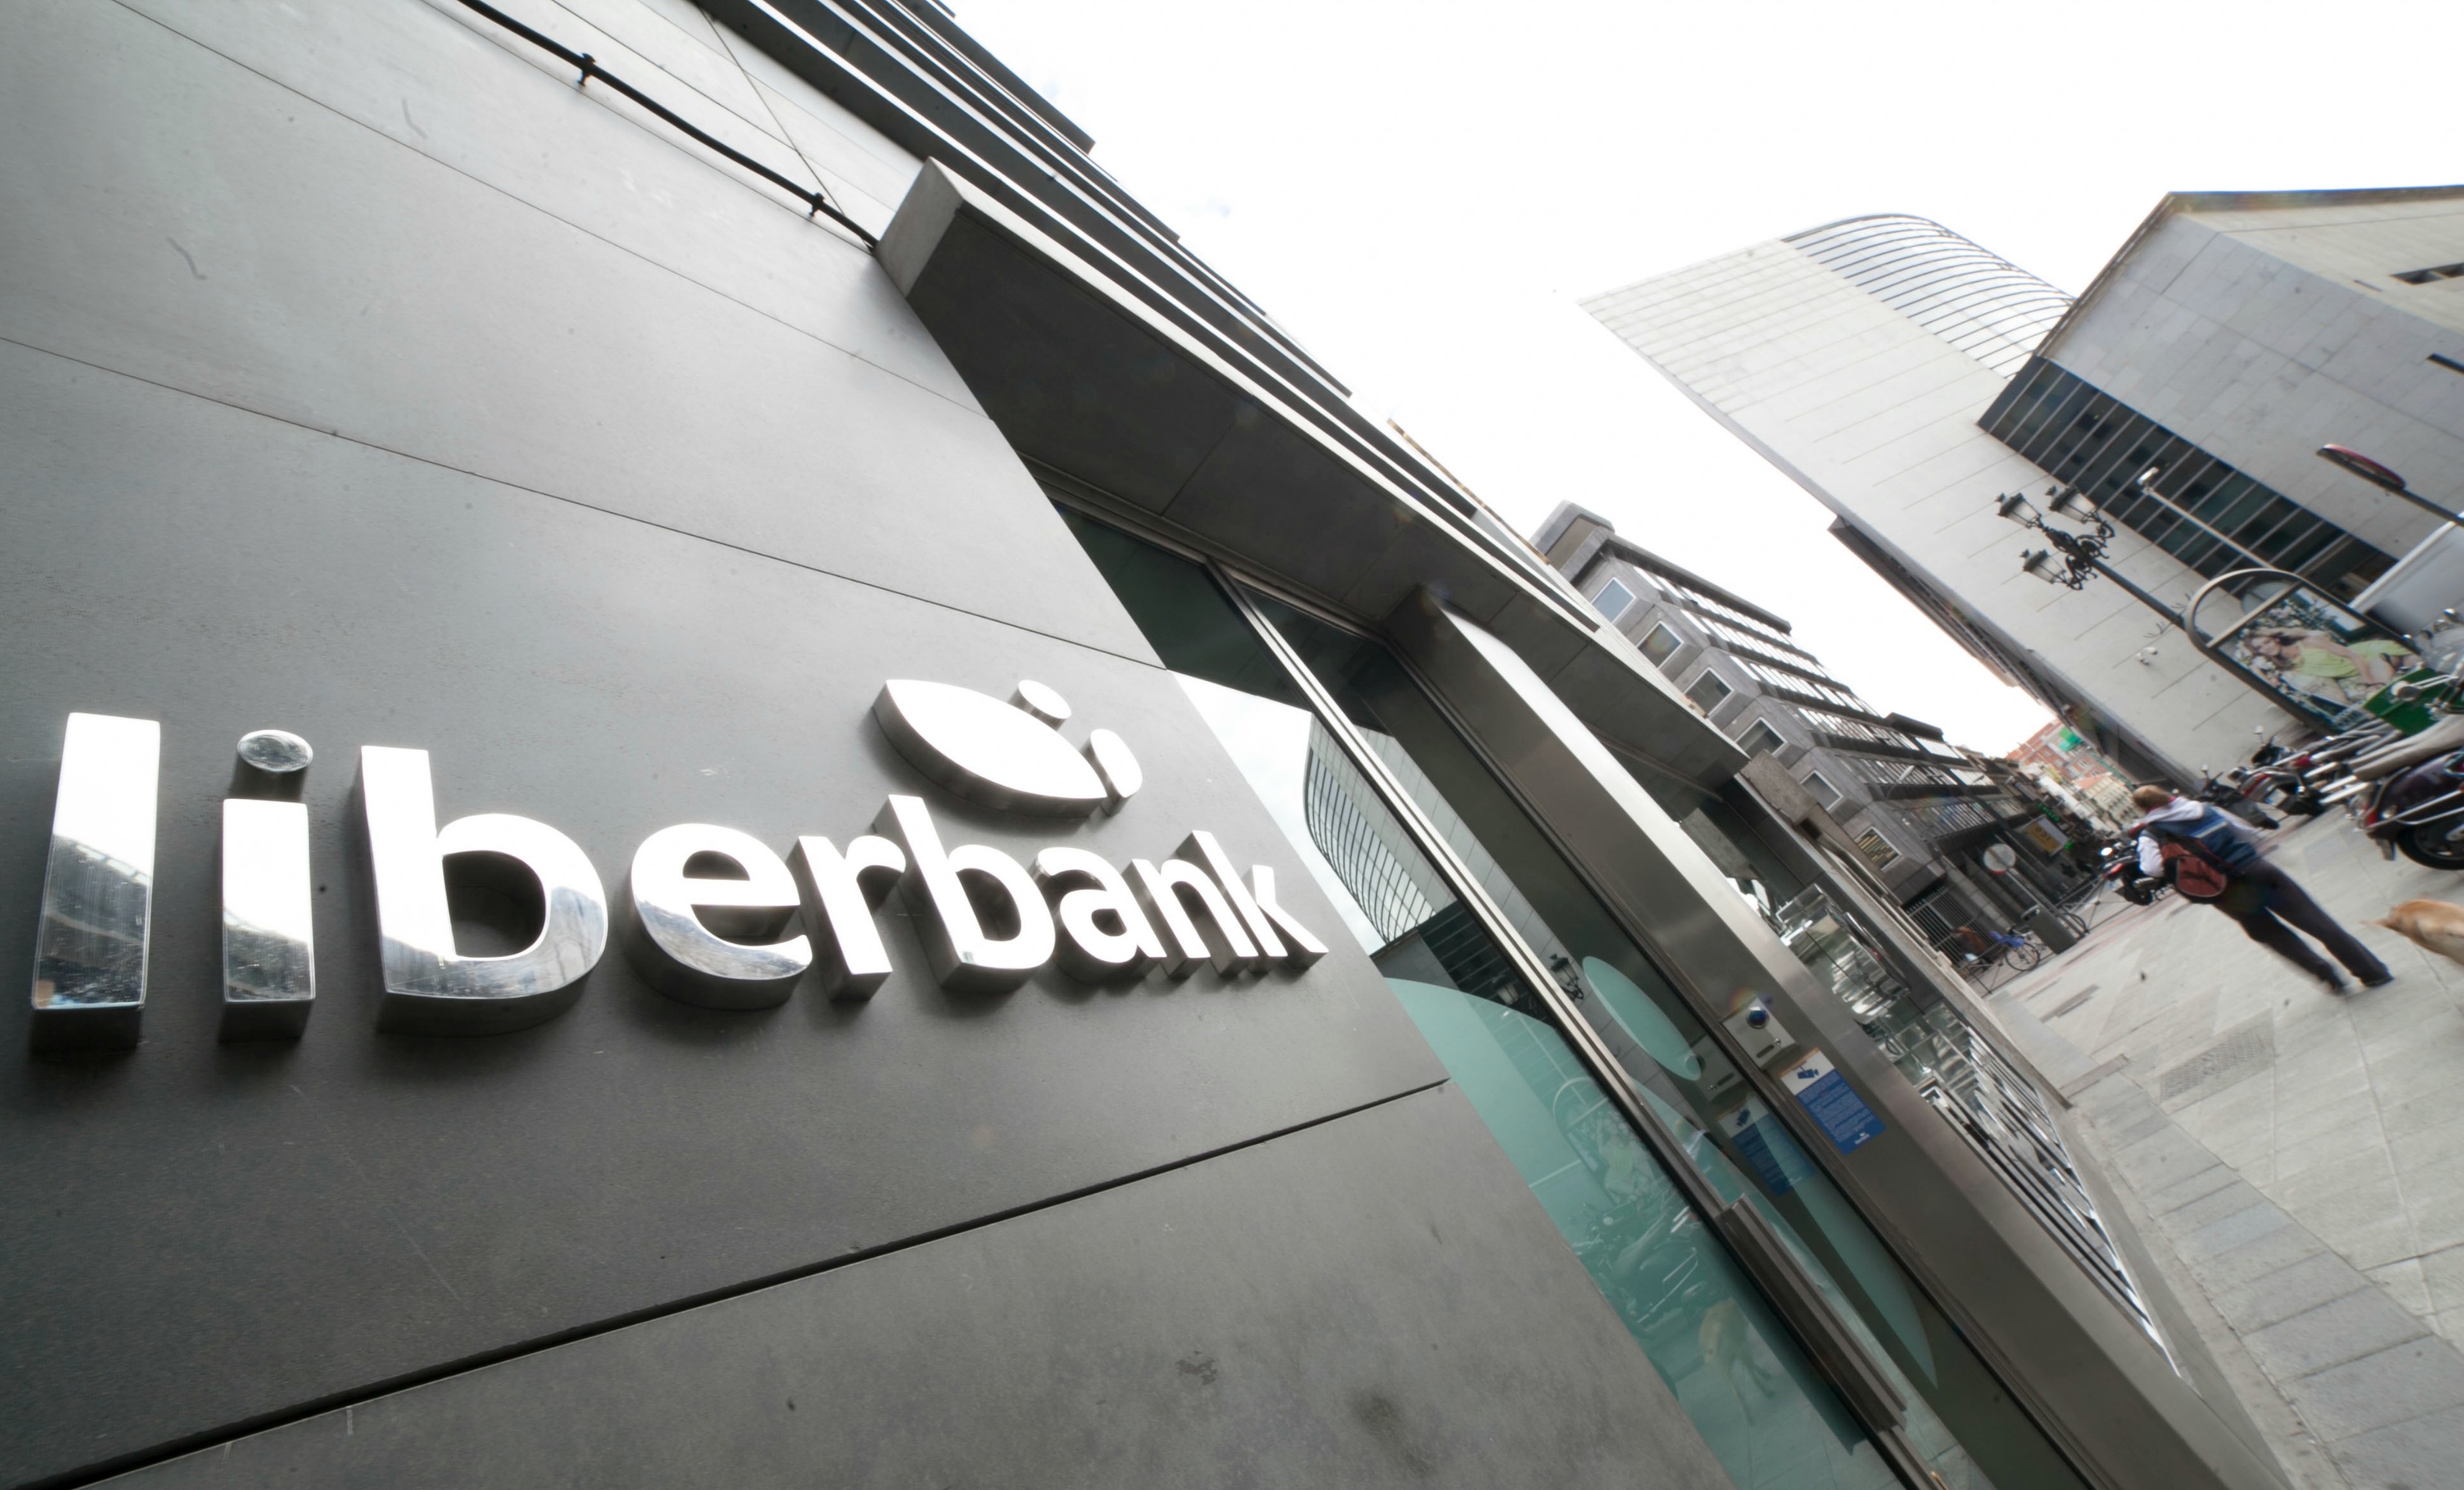 Espagne : Il braque une banque... et se suicide